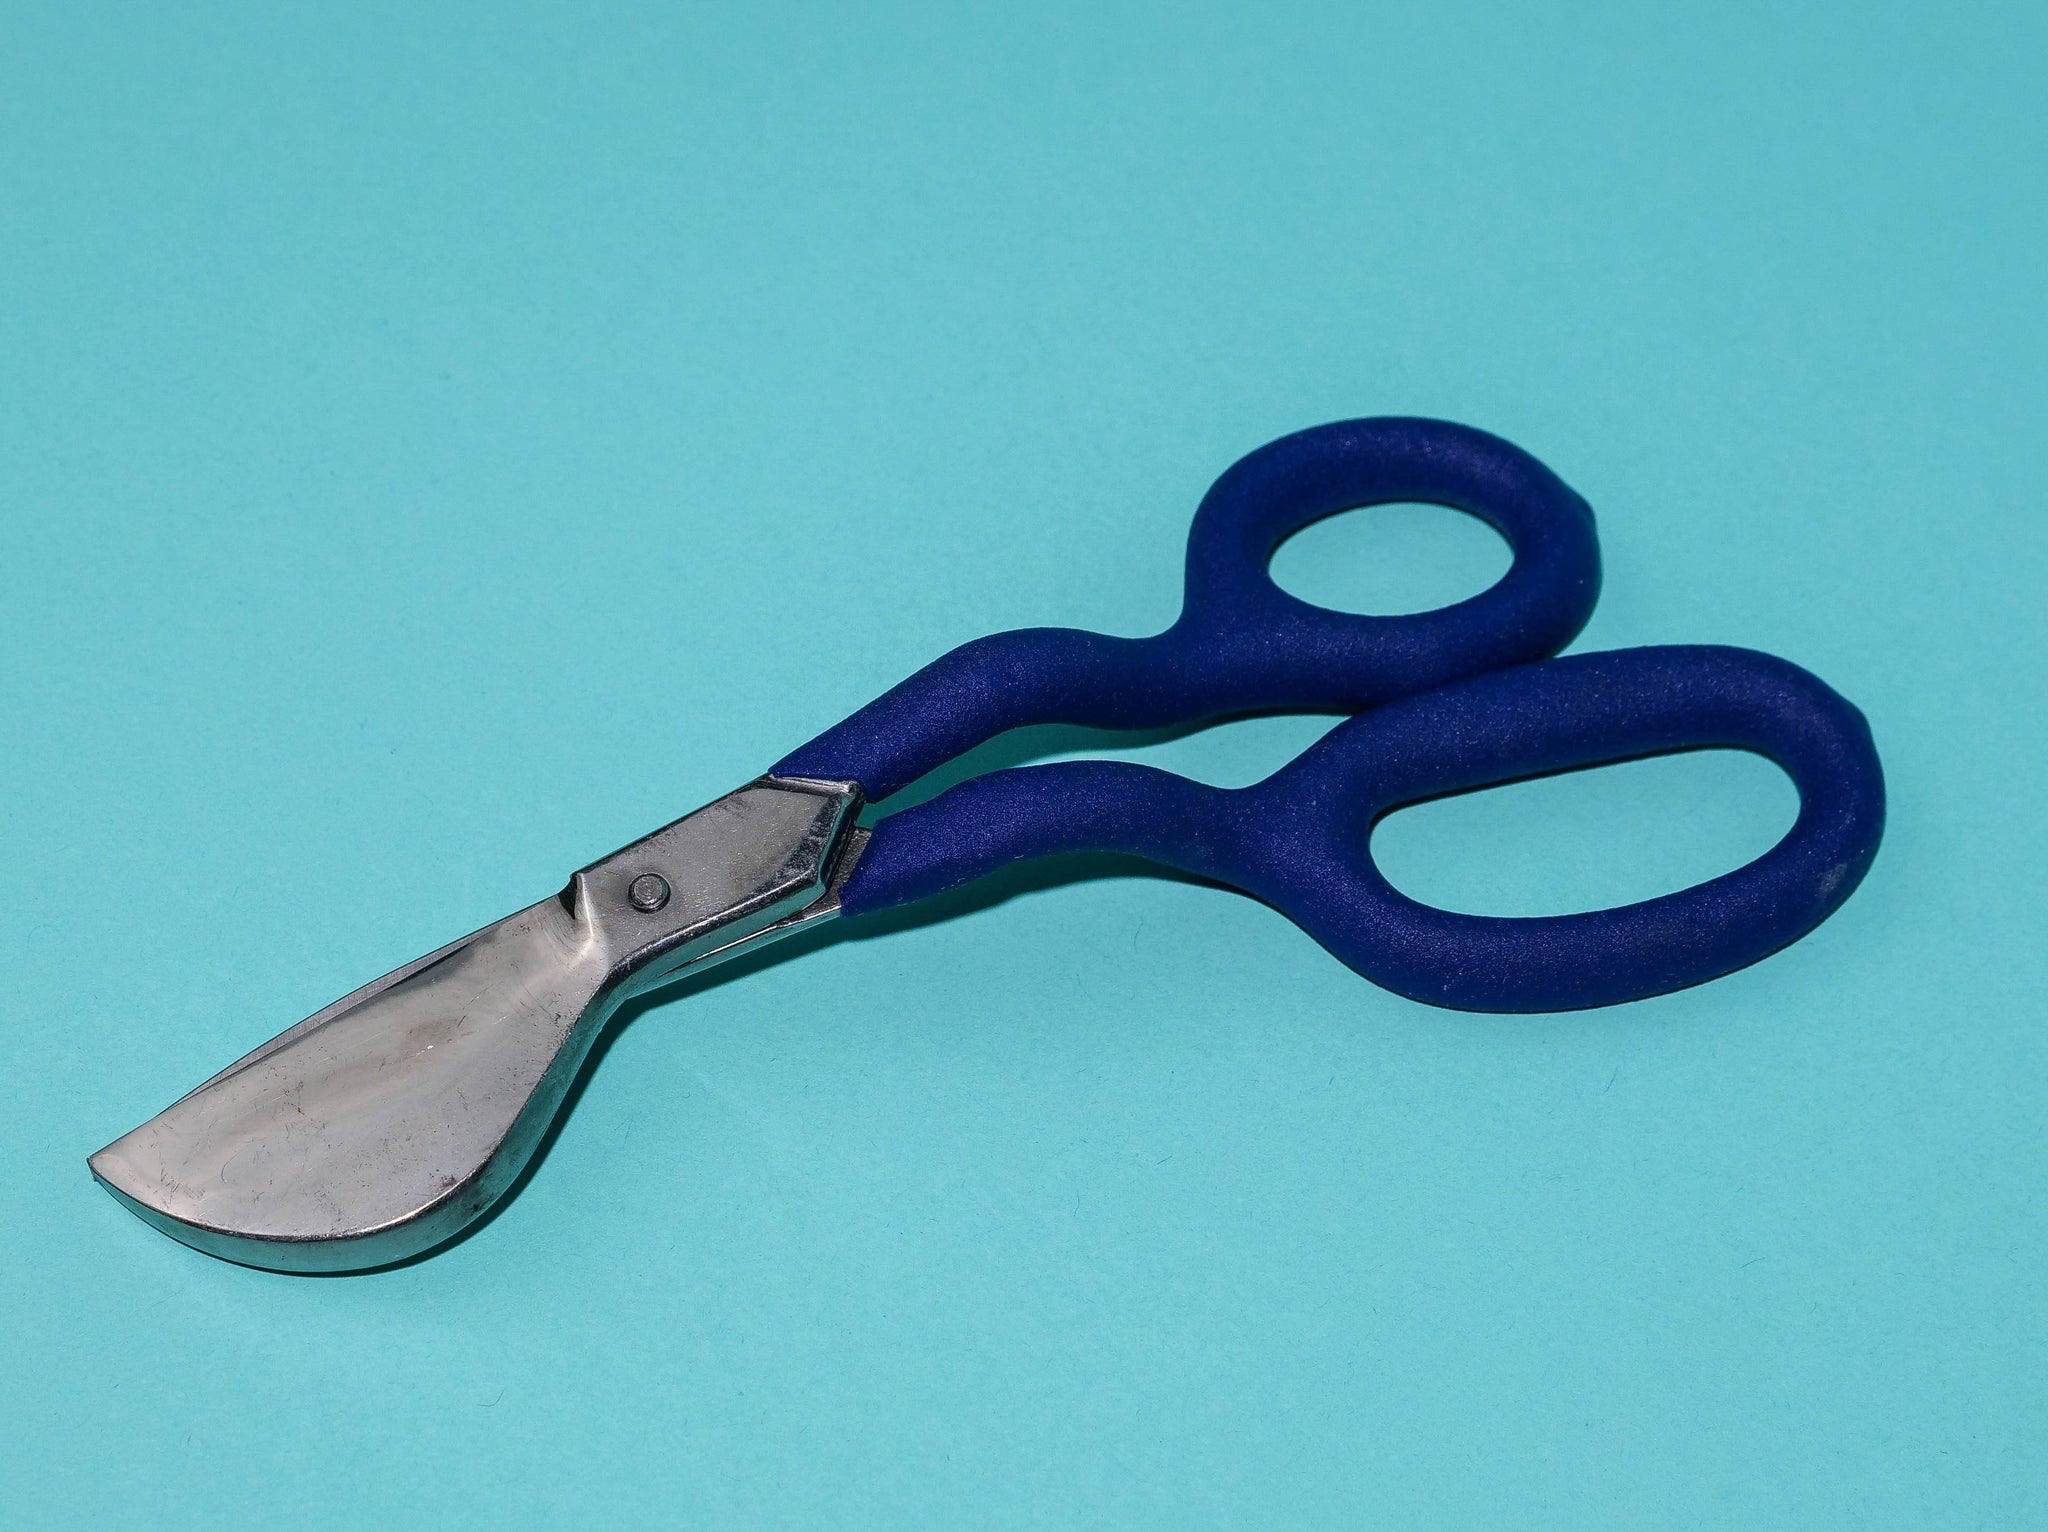 Duckbill scissors